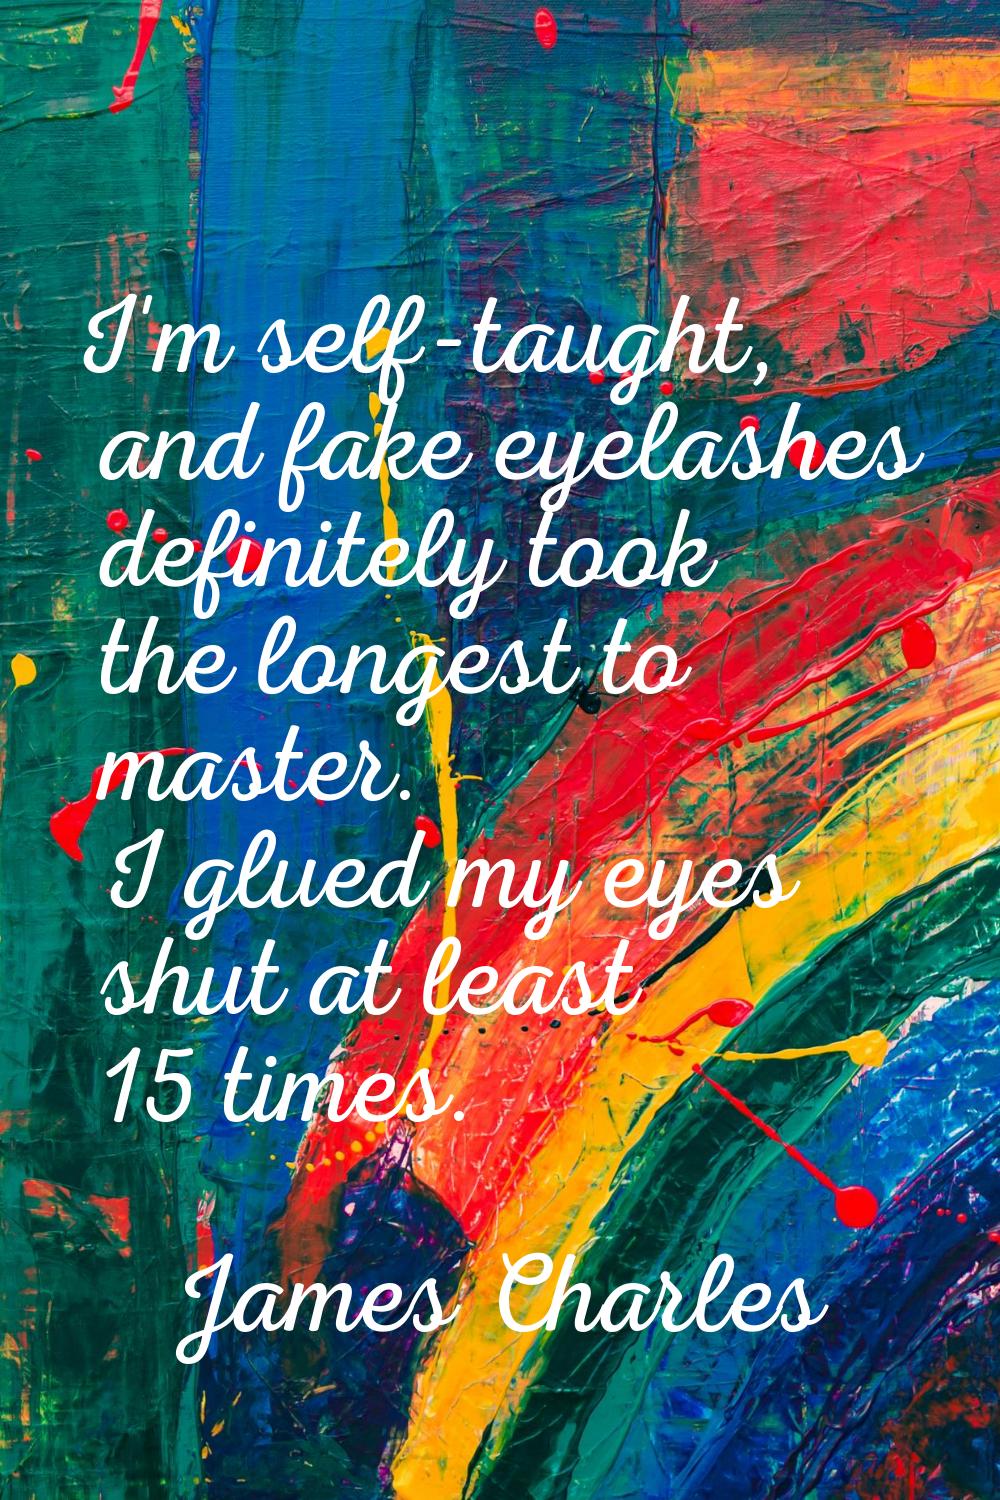 I'm self-taught, and fake eyelashes definitely took the longest to master. I glued my eyes shut at 